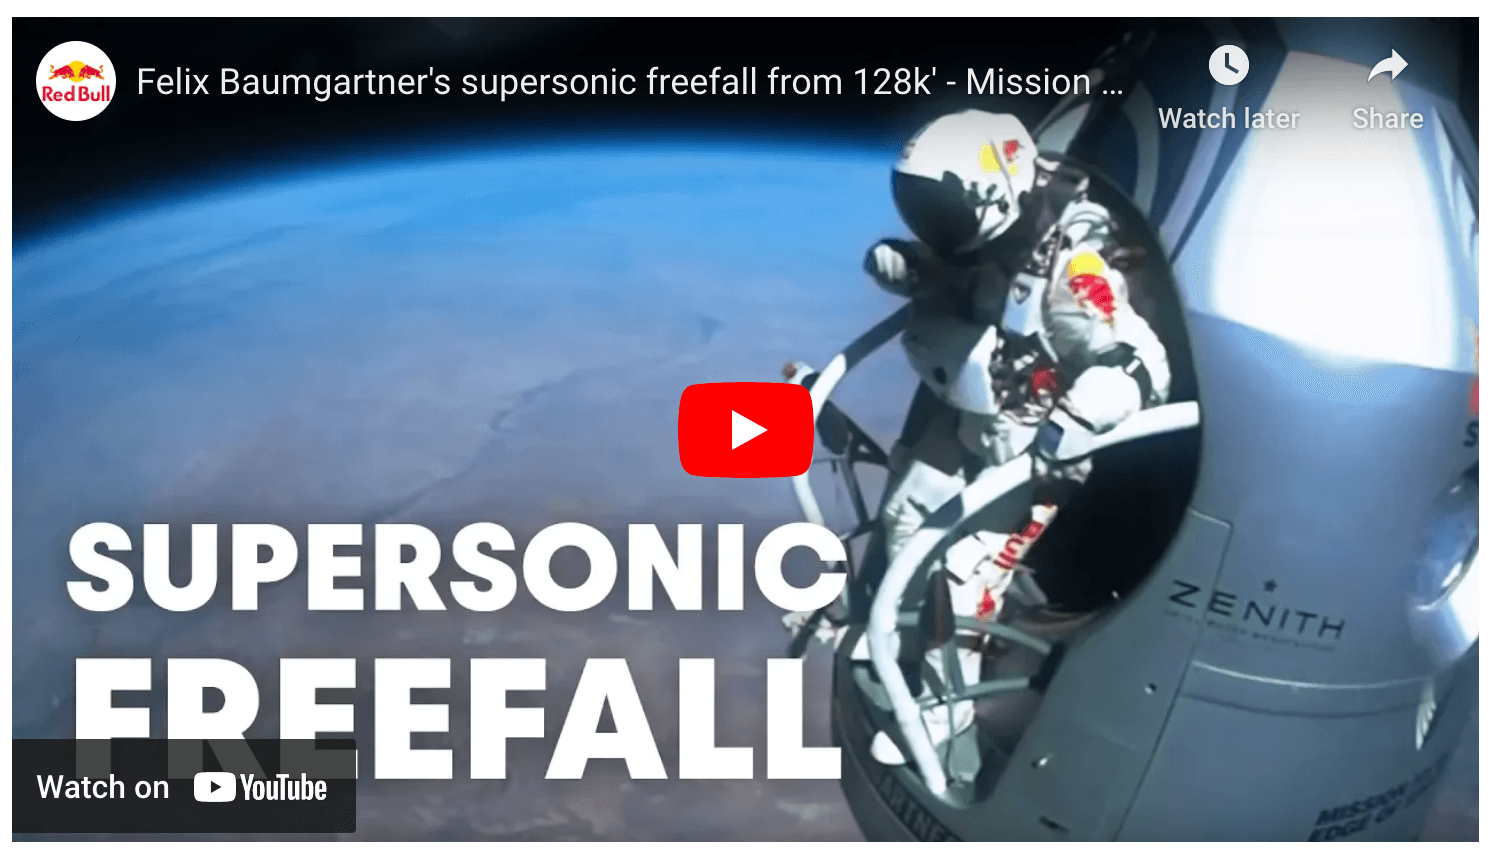 Felix Baumgartner 128k free fall sponsored by redbull 